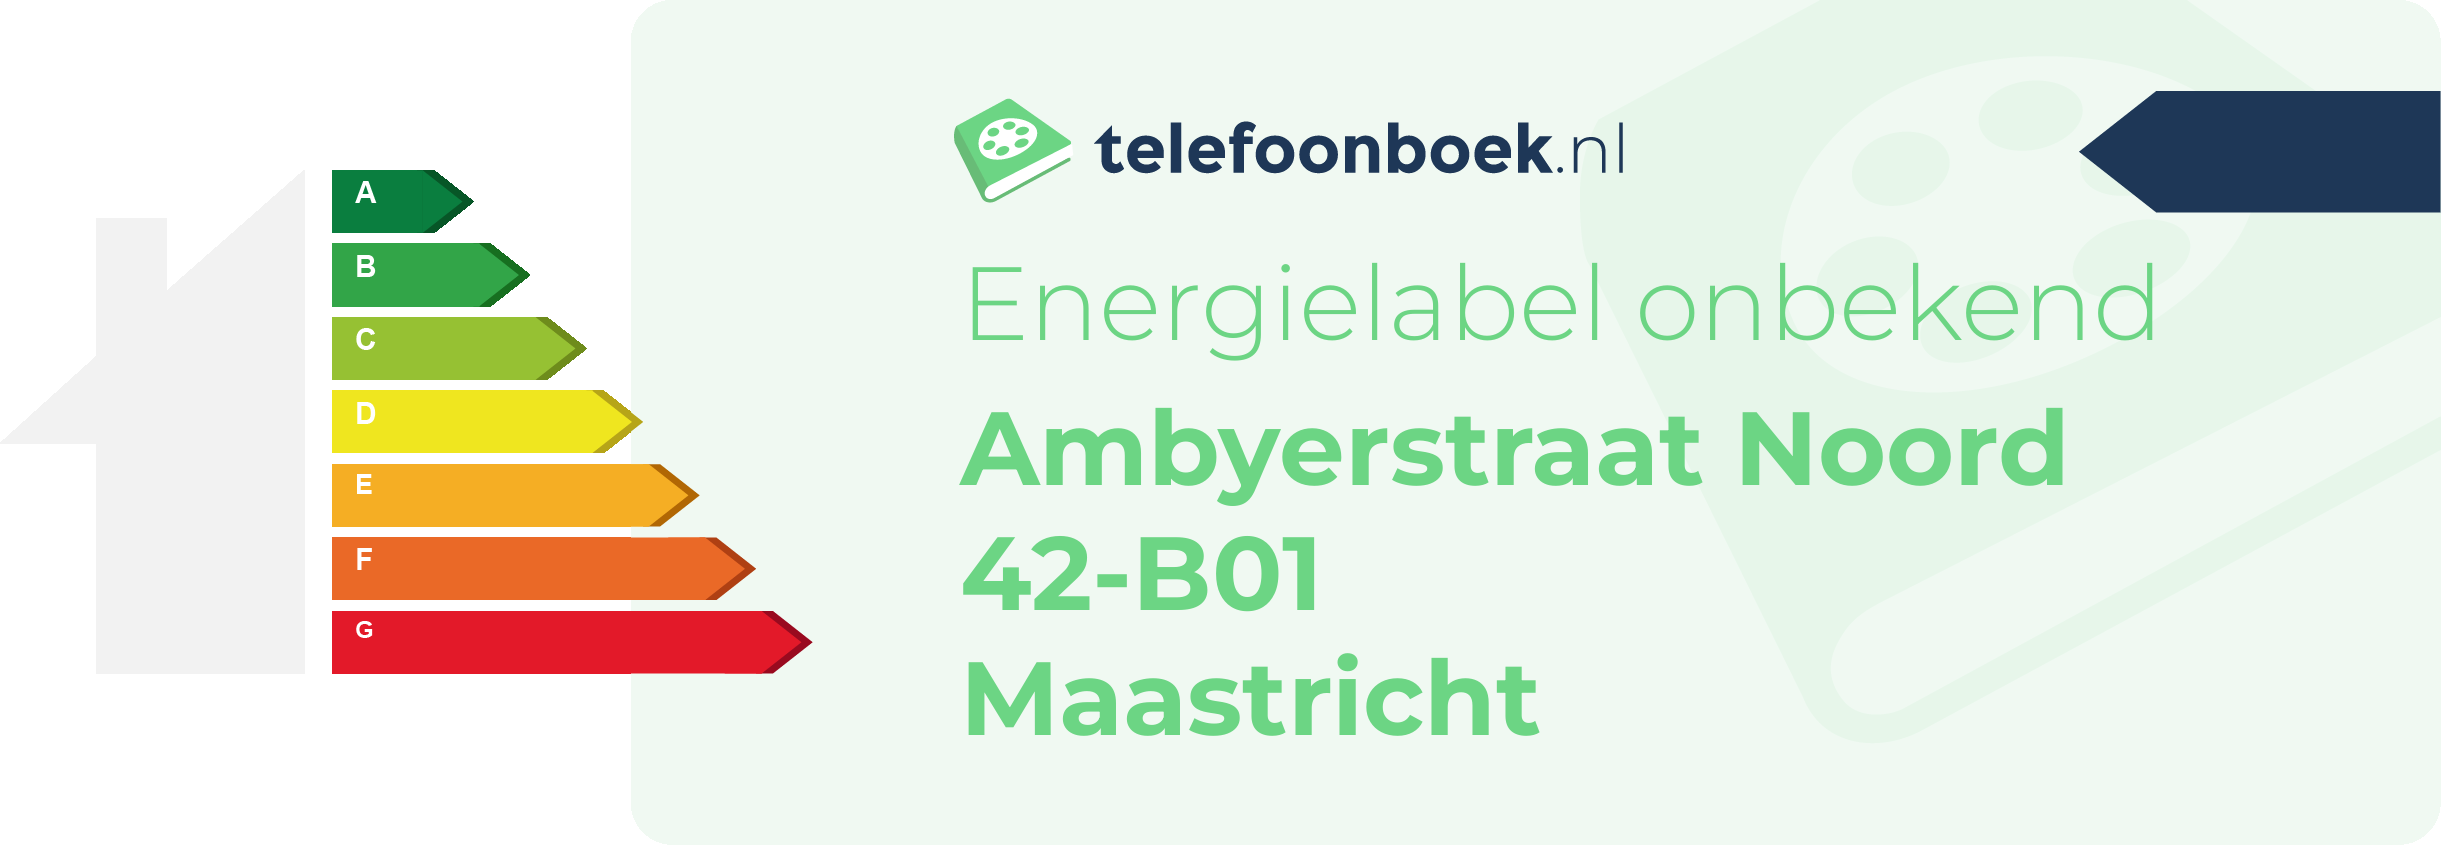 Energielabel Ambyerstraat Noord 42-B01 Maastricht